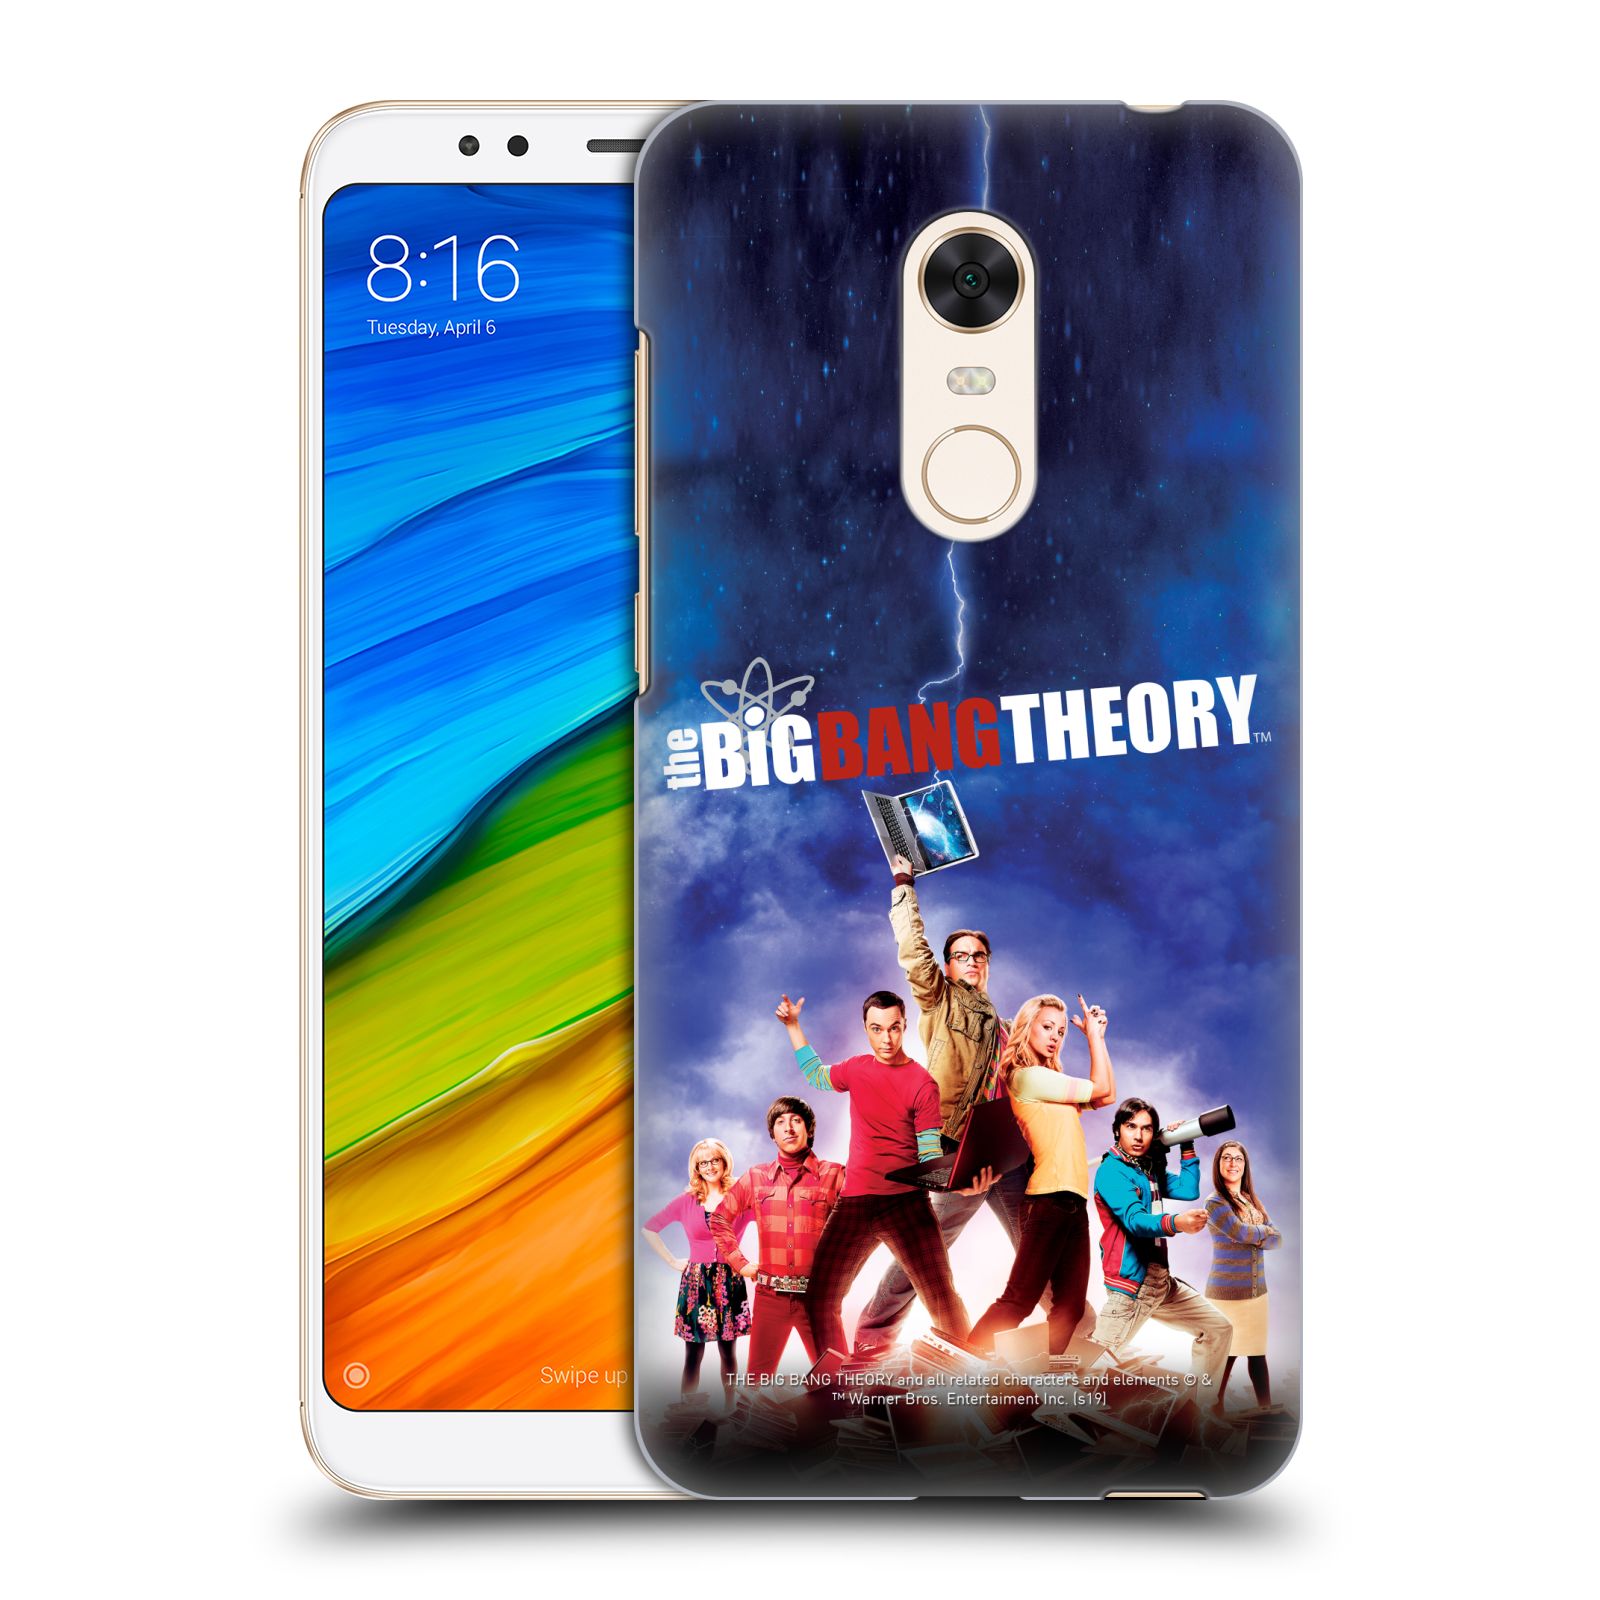 Pouzdro na mobil Xiaomi Redmi 5 PLUS (REDMI 5+) - HEAD CASE - Big Bang Theory - 5. sezóna